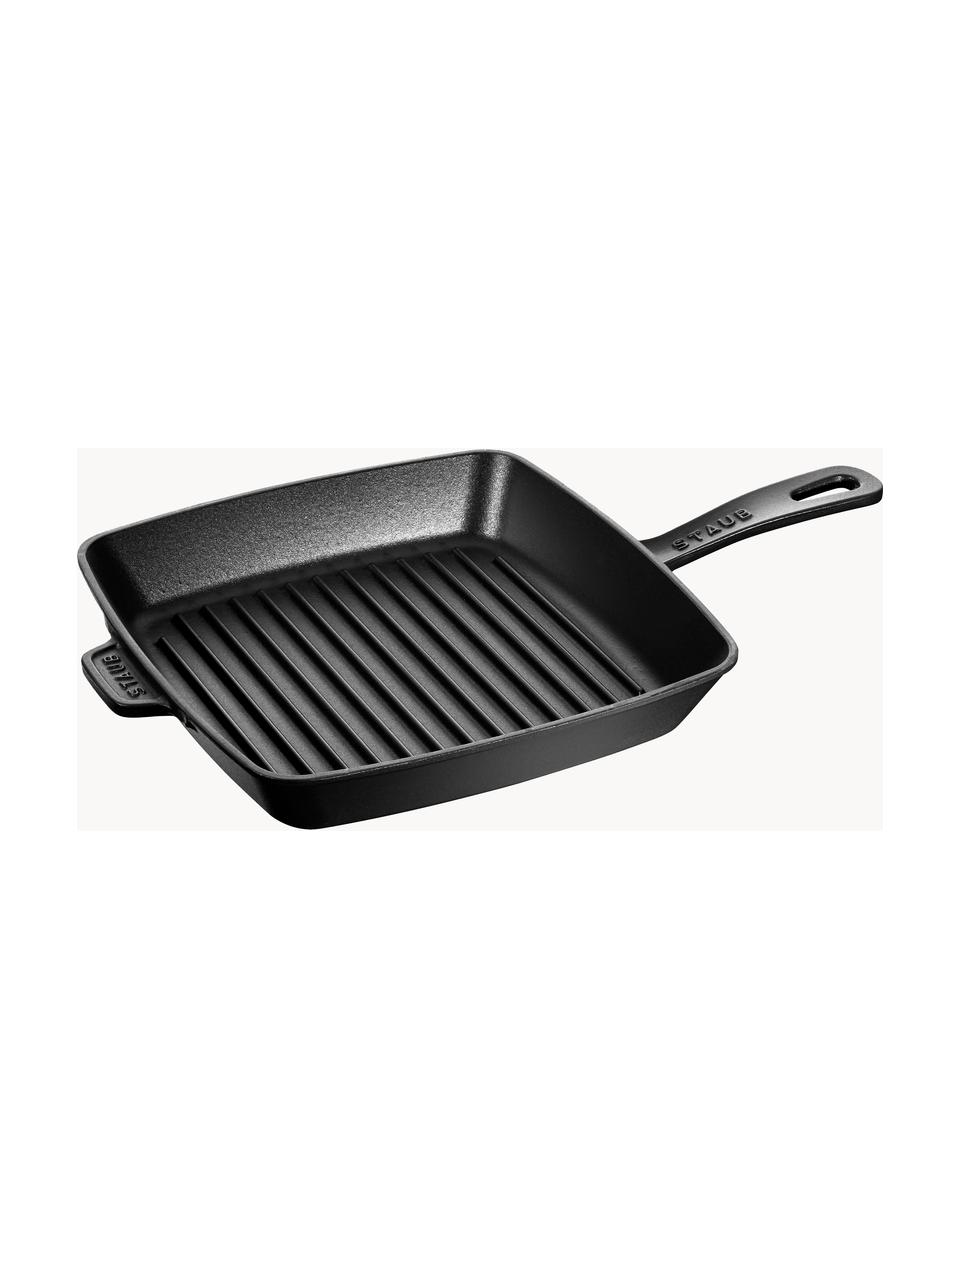 Sartén skillet cuadrada grill American Grill, Hierro fundido esmaltado, Negro, An 38 x Al 5 cm